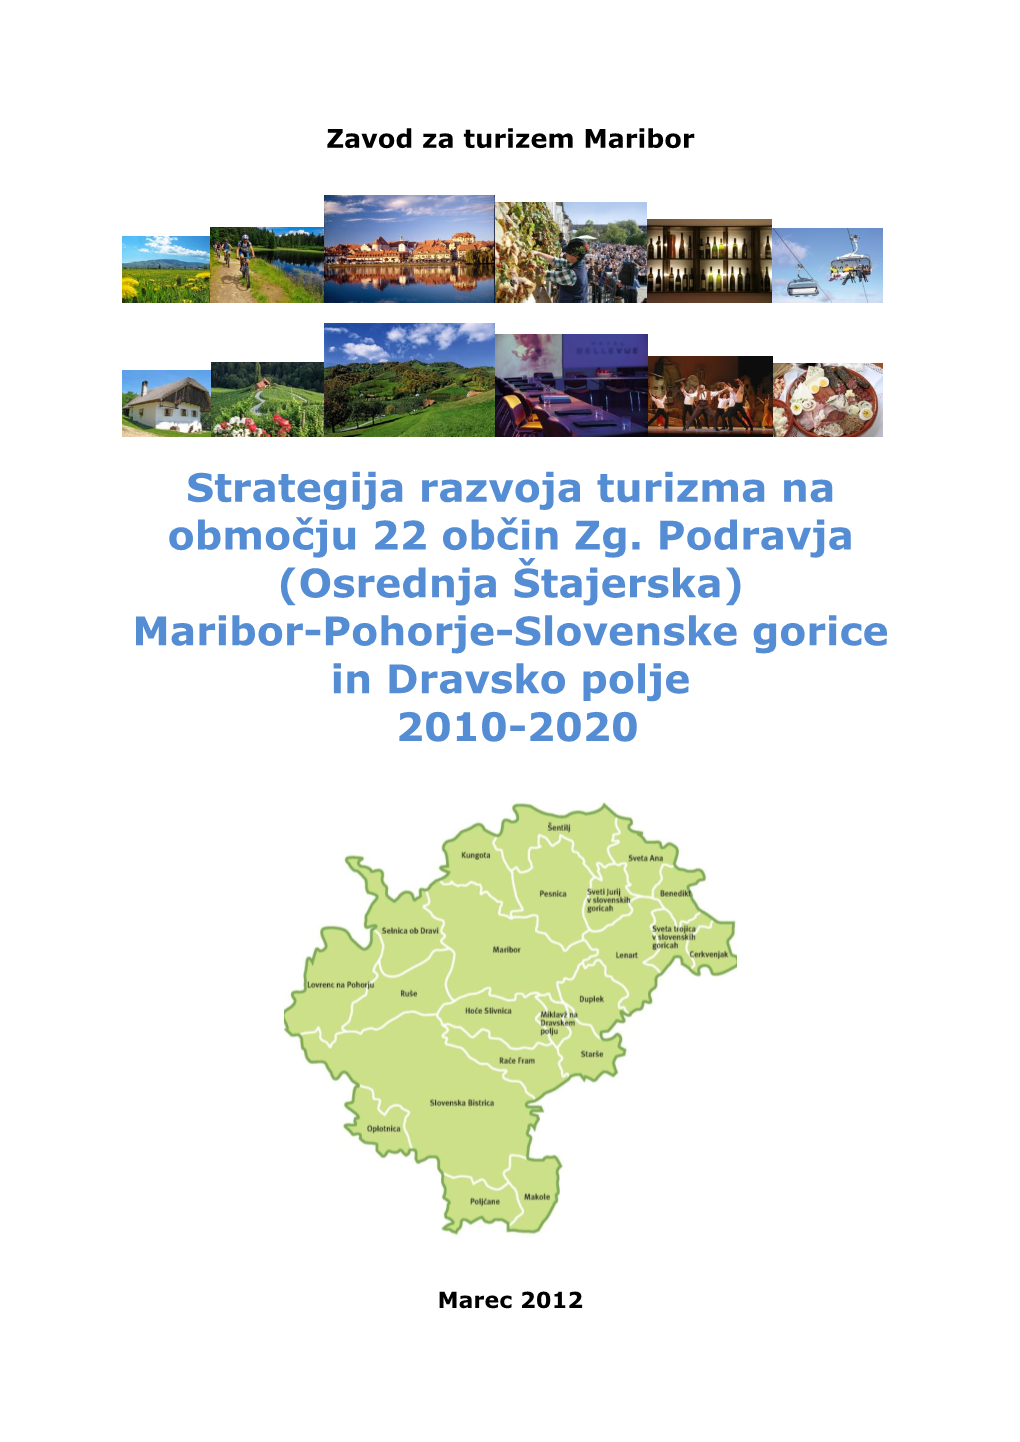 Strategija Razvoja Turizma Na Območju 22 Občin Zg. Podravja (Osrednja Štajerska) Maribor-Pohorje-Slovenske Gorice in Dravsko Polje 2010-2020